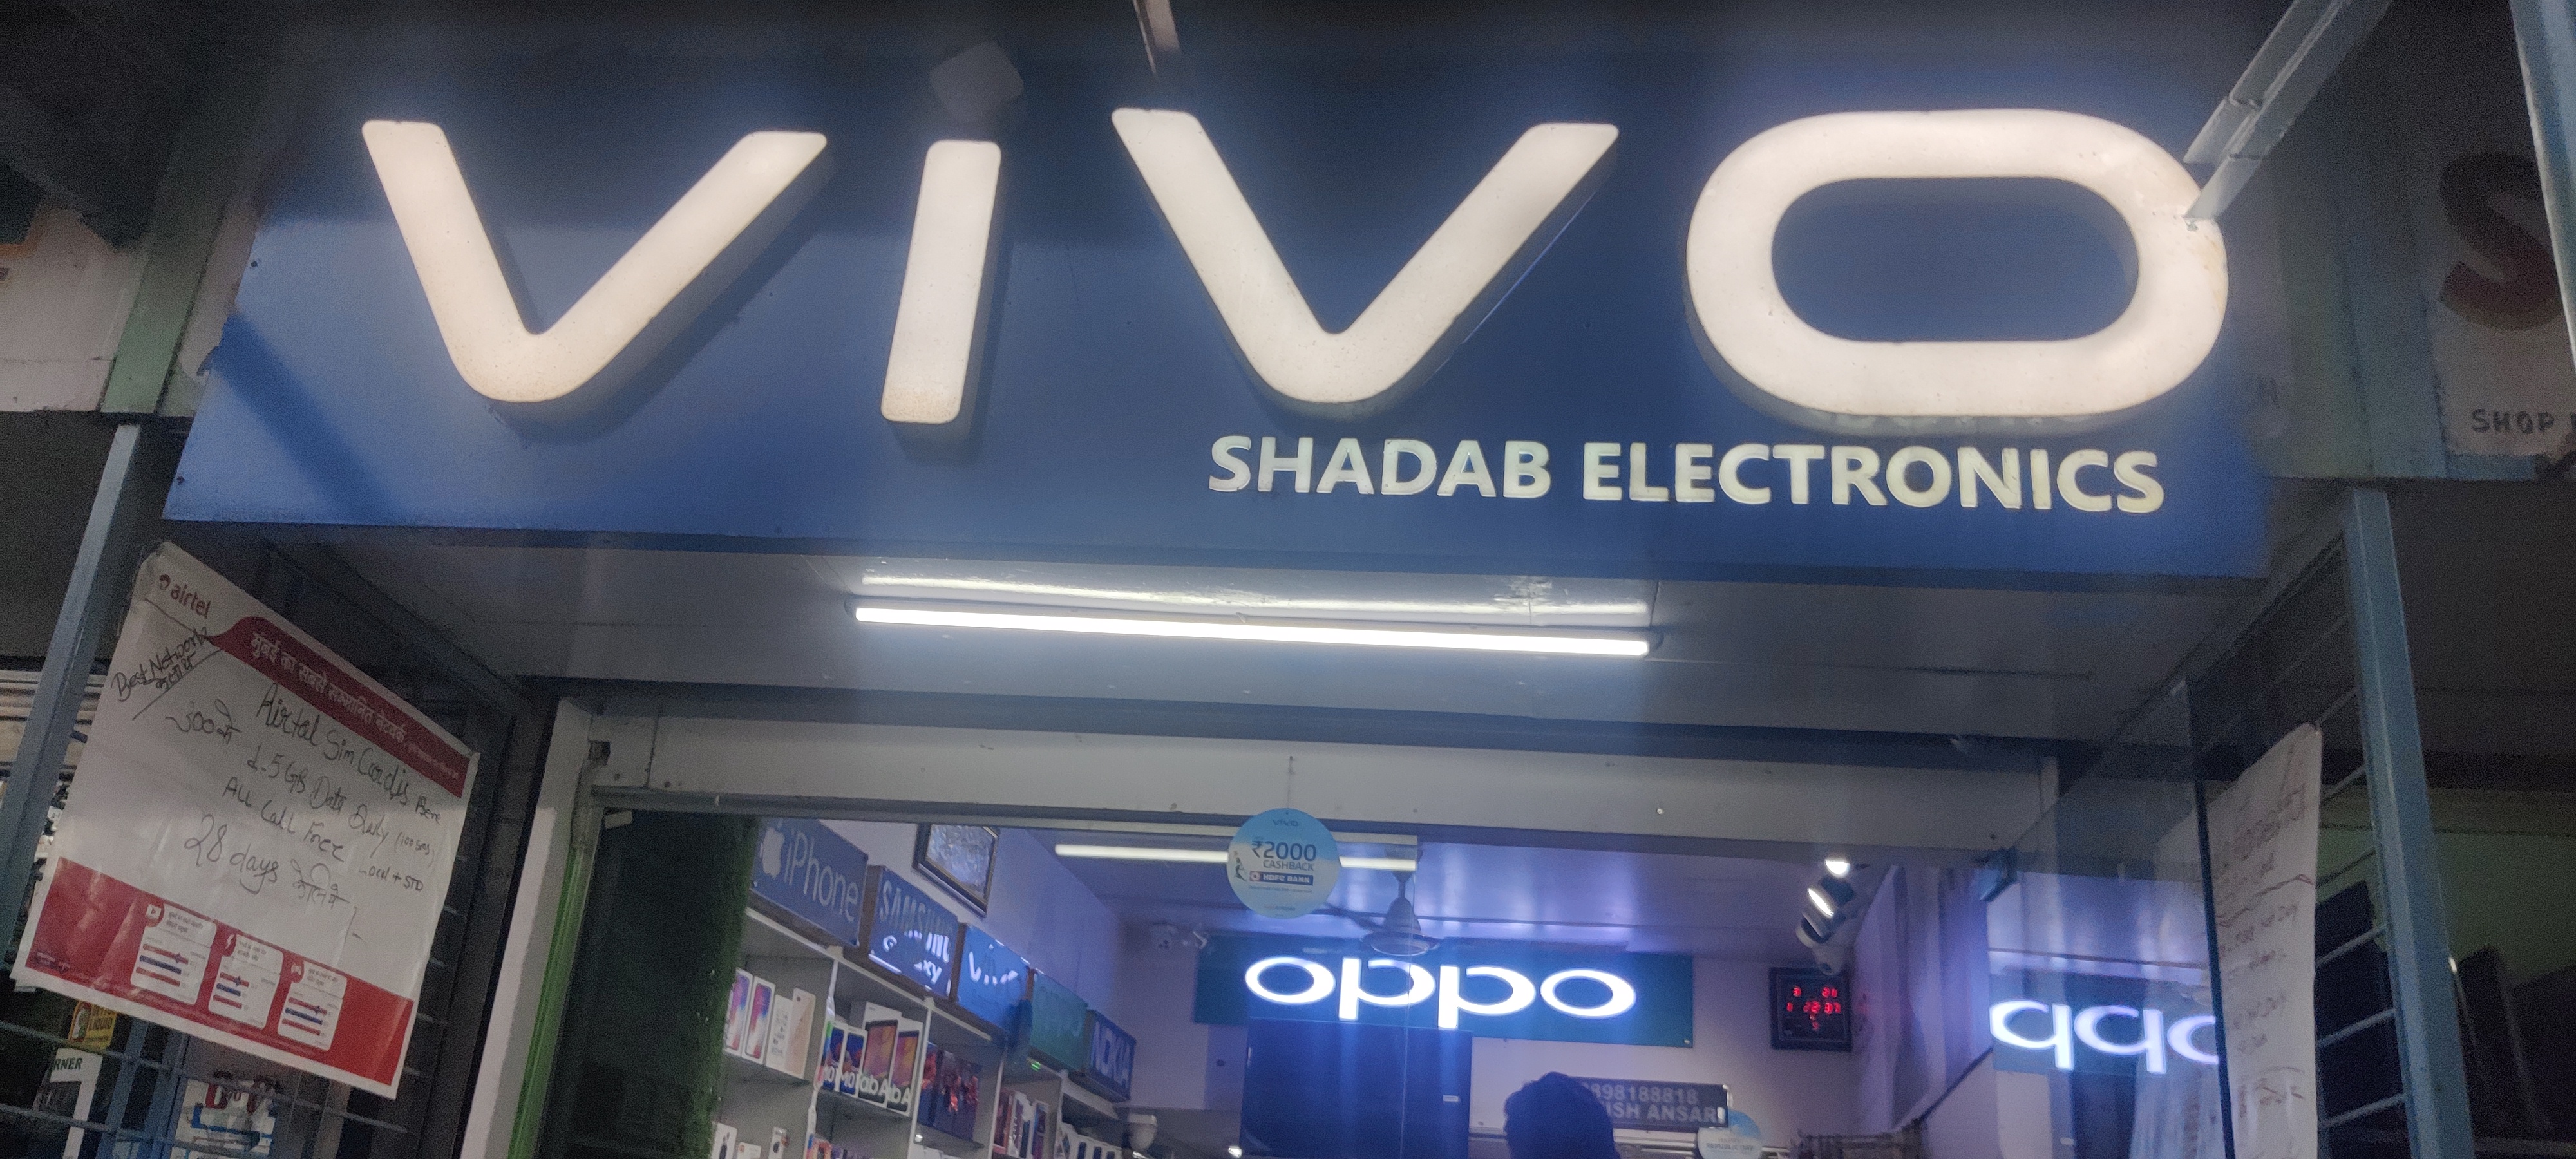 Shadab Electronics